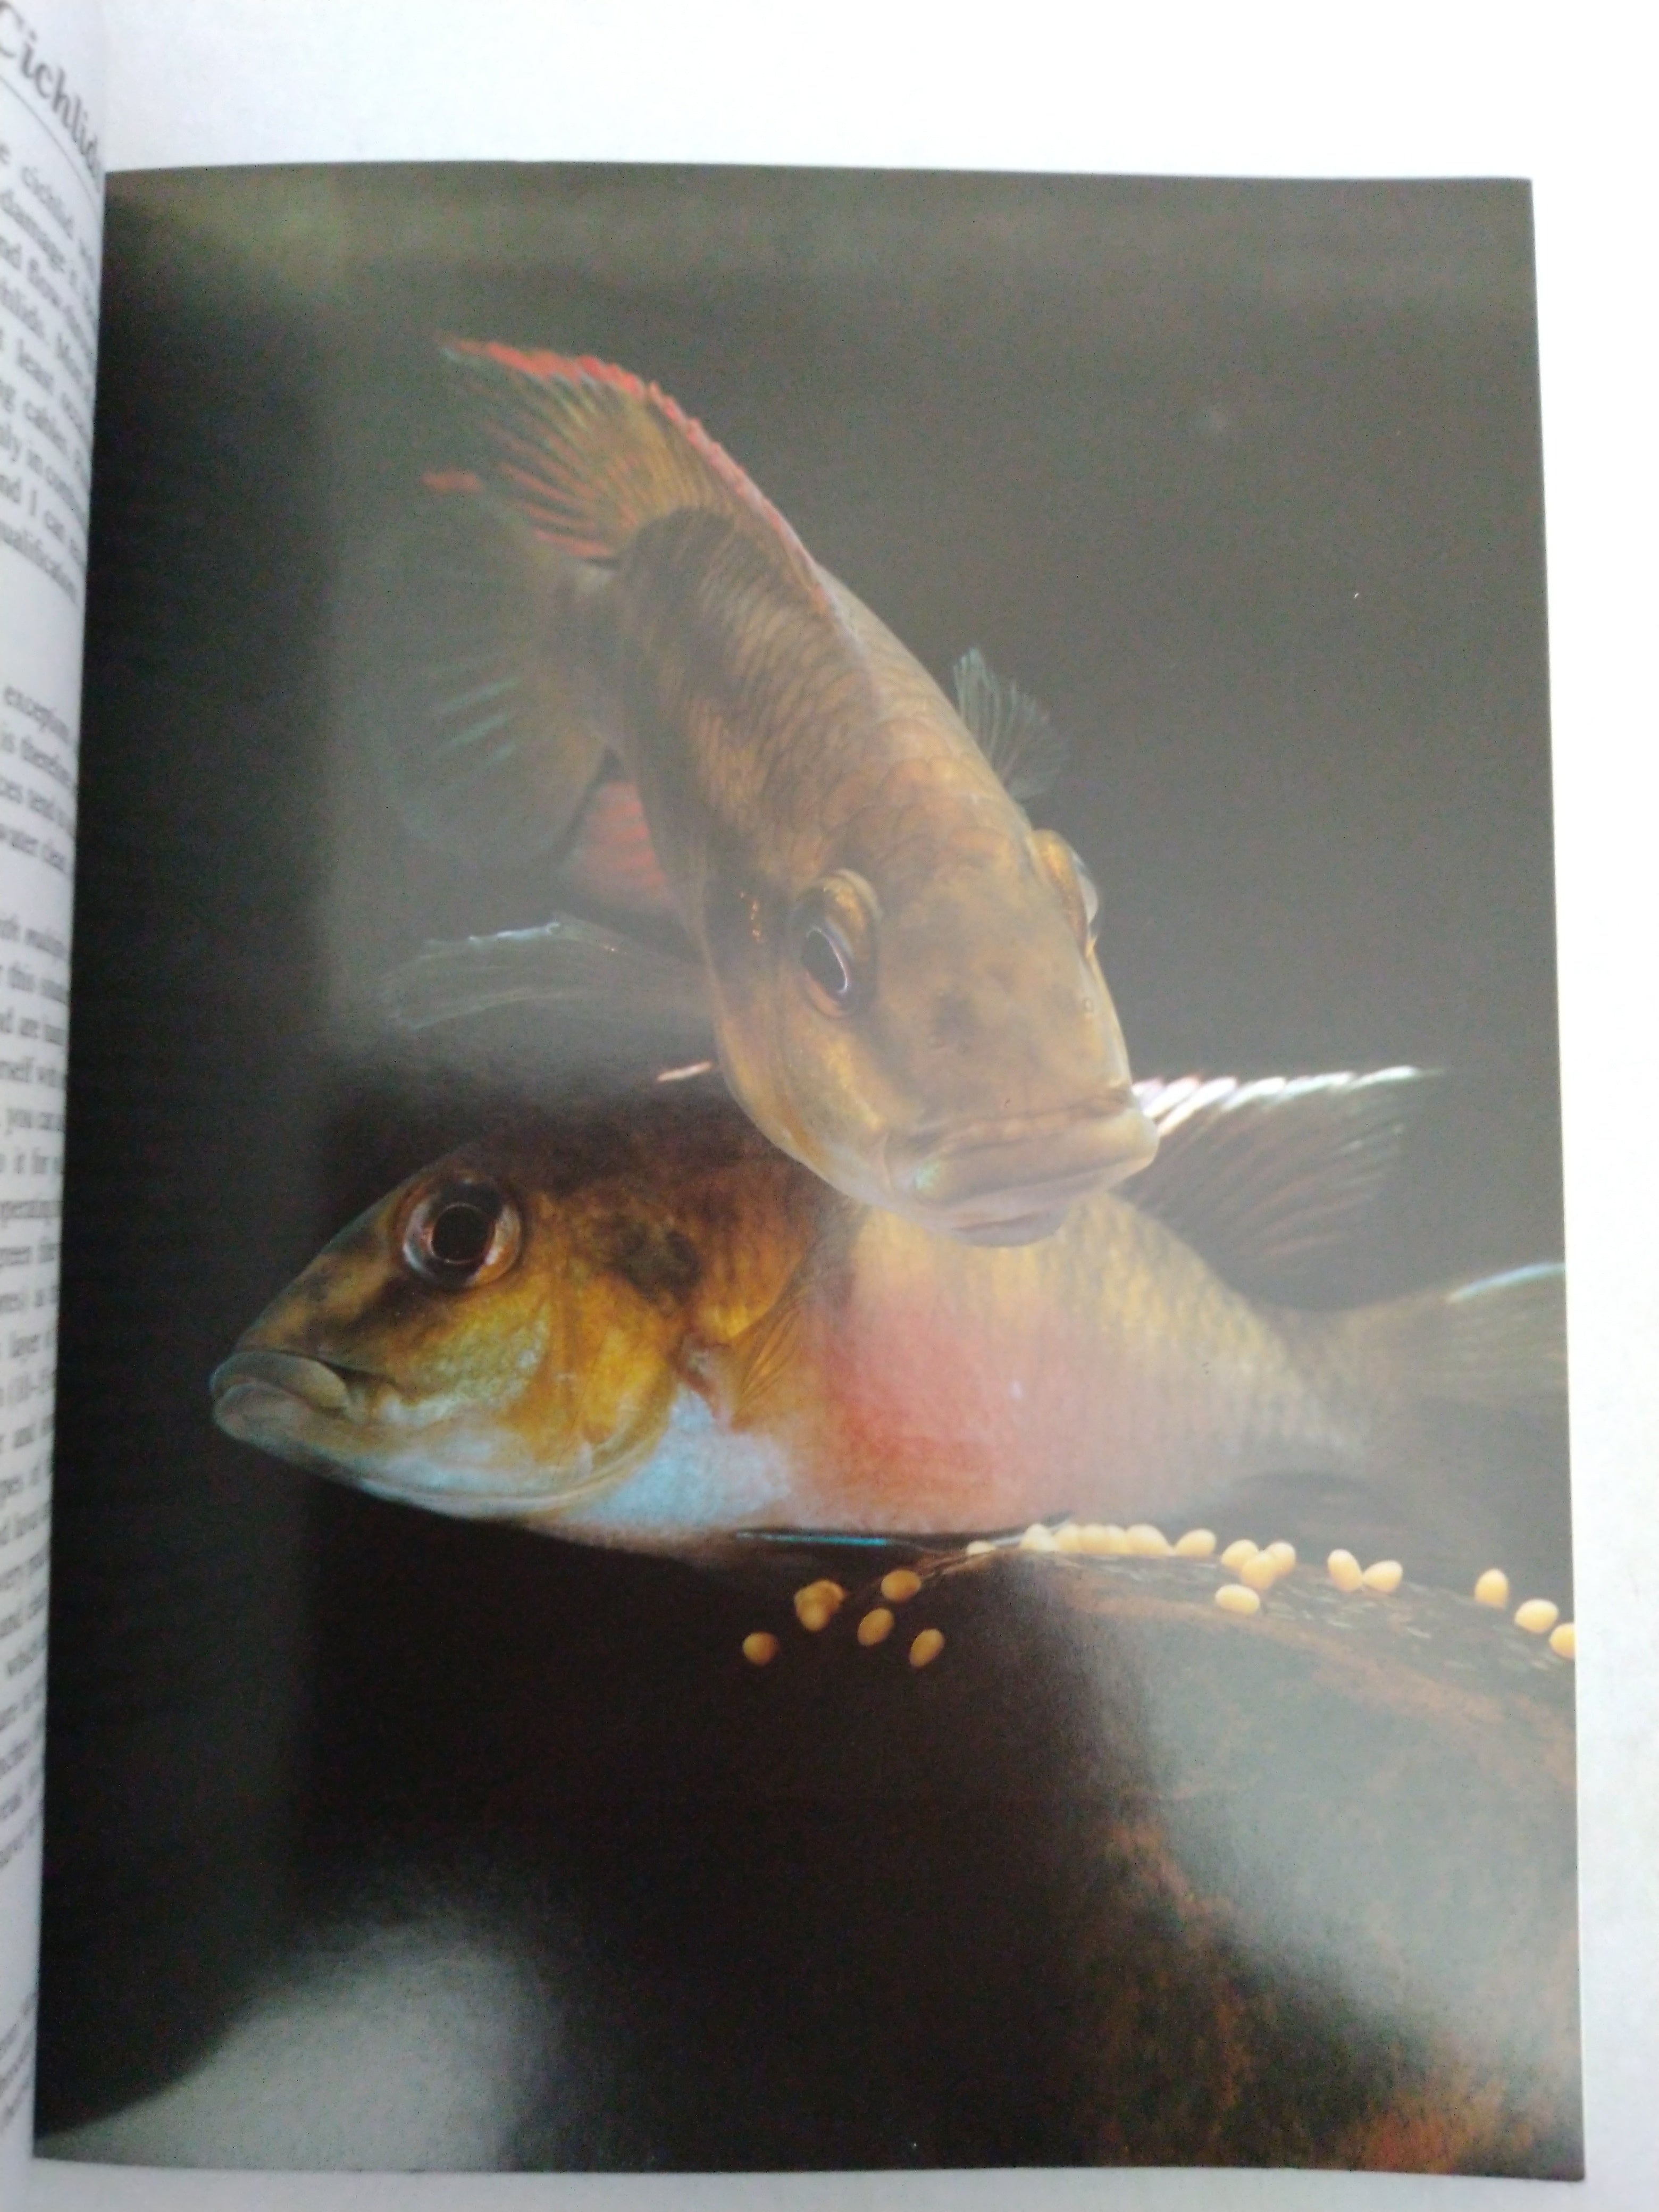 Cichlids: Purchase, Care, Feeding, Diseases, Behavior, and Breeding by Georg Zurlo, Matthew M. Vriends